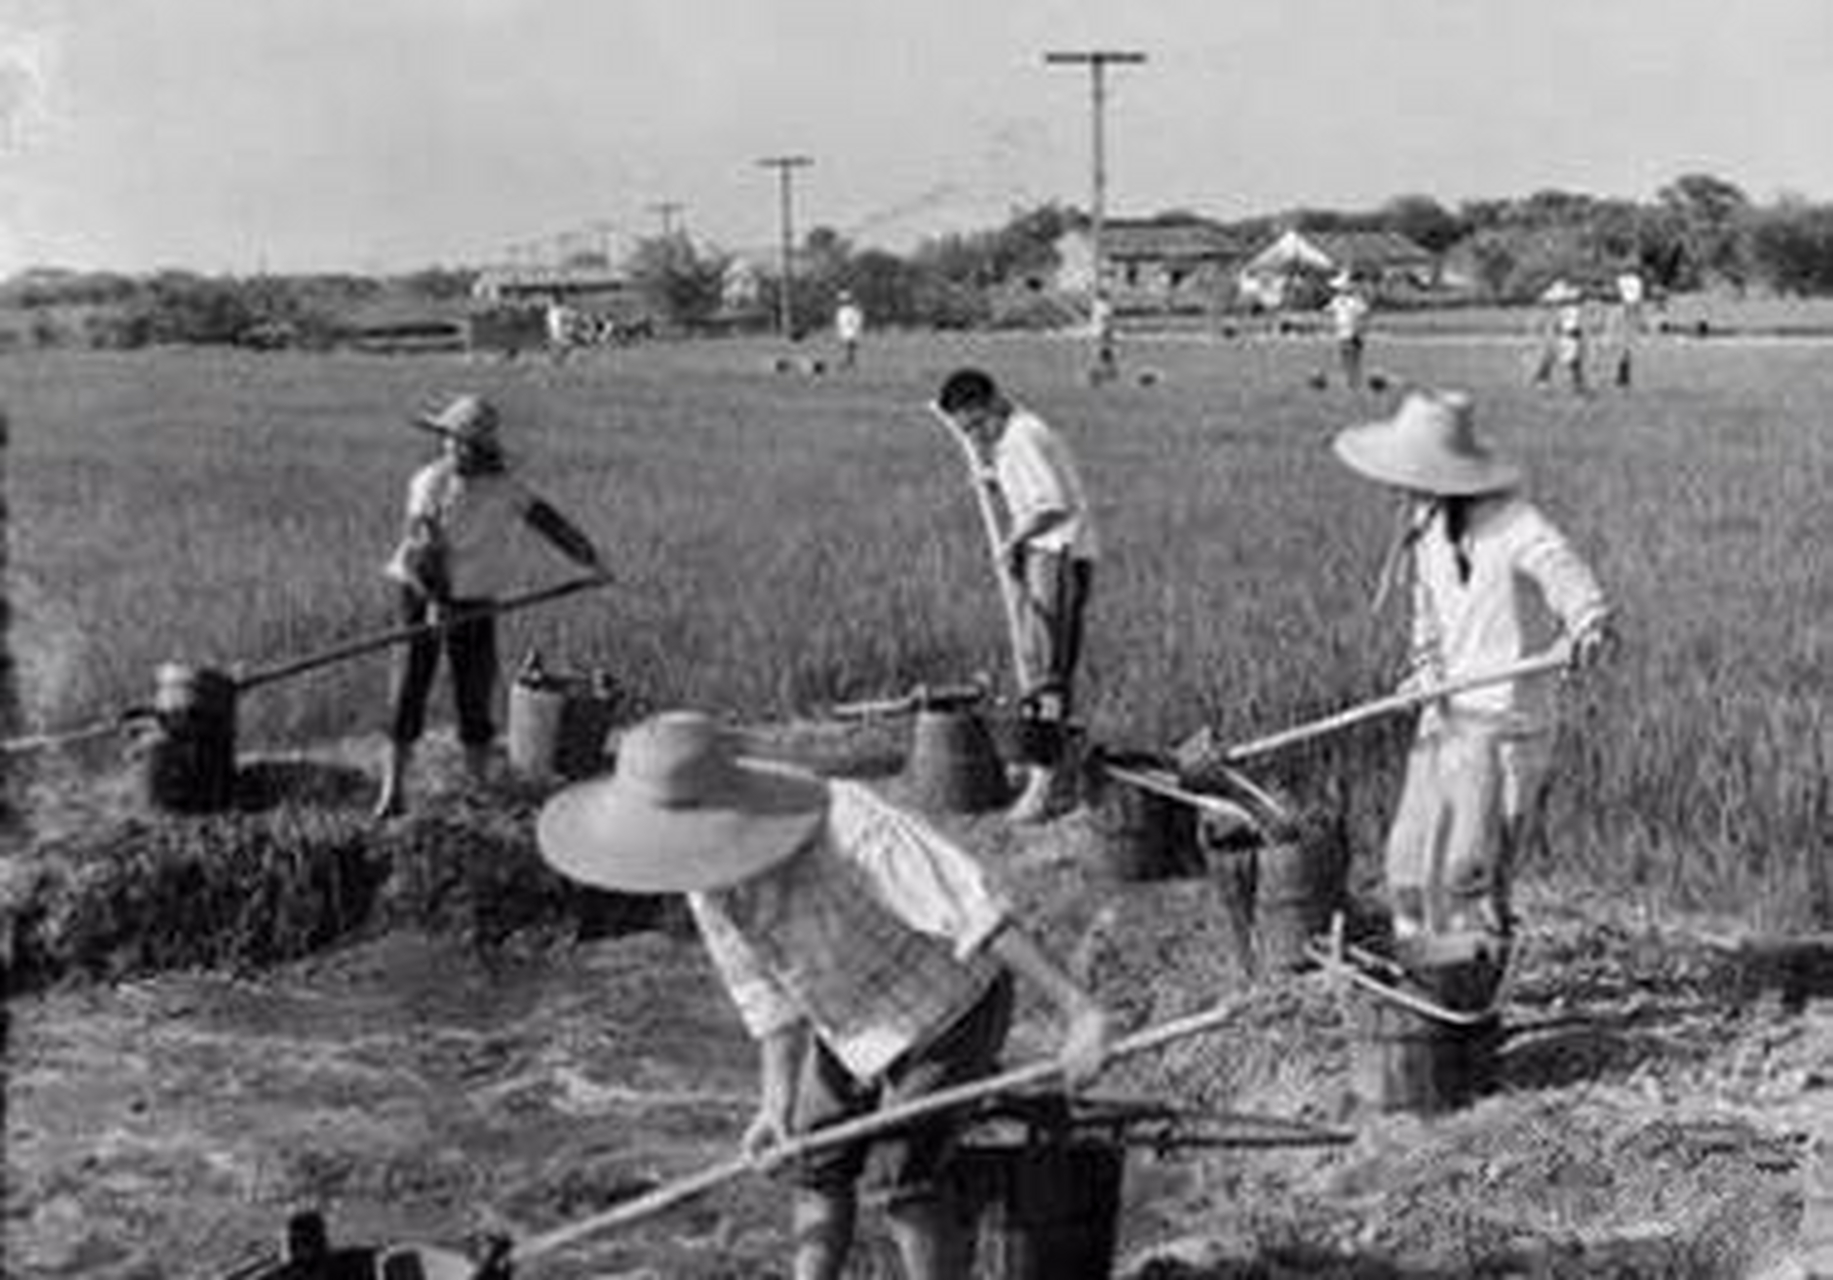 农村记忆:1970年知识青年上山下乡在生产队劳动的老照片